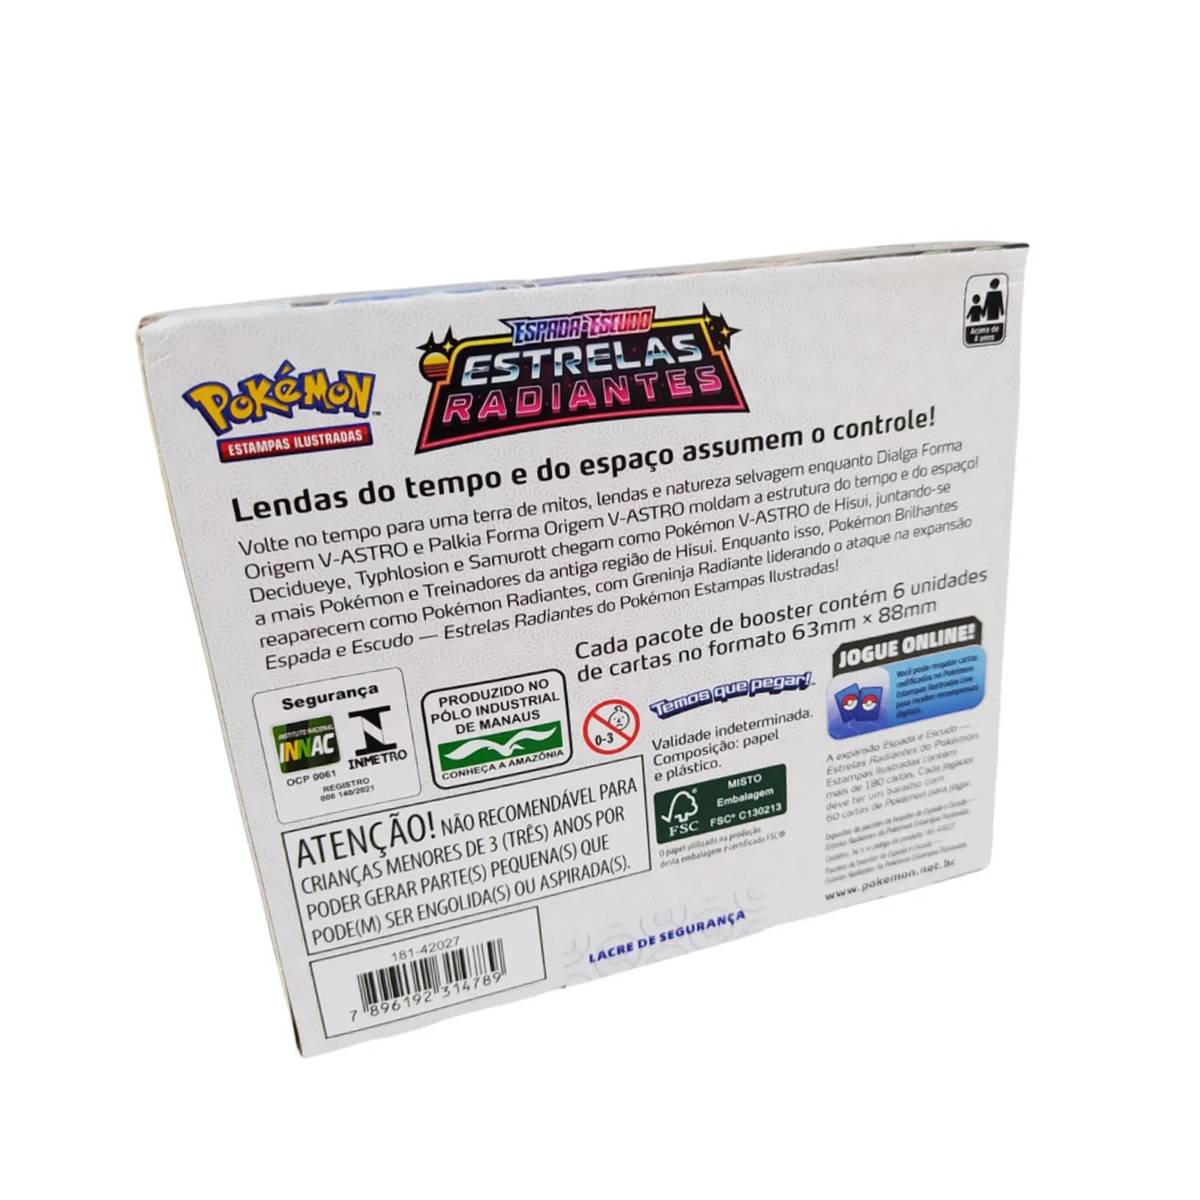 Pokémon TCG - Resumo do Primeiro Mês de Estrelas Radiantes no Formato